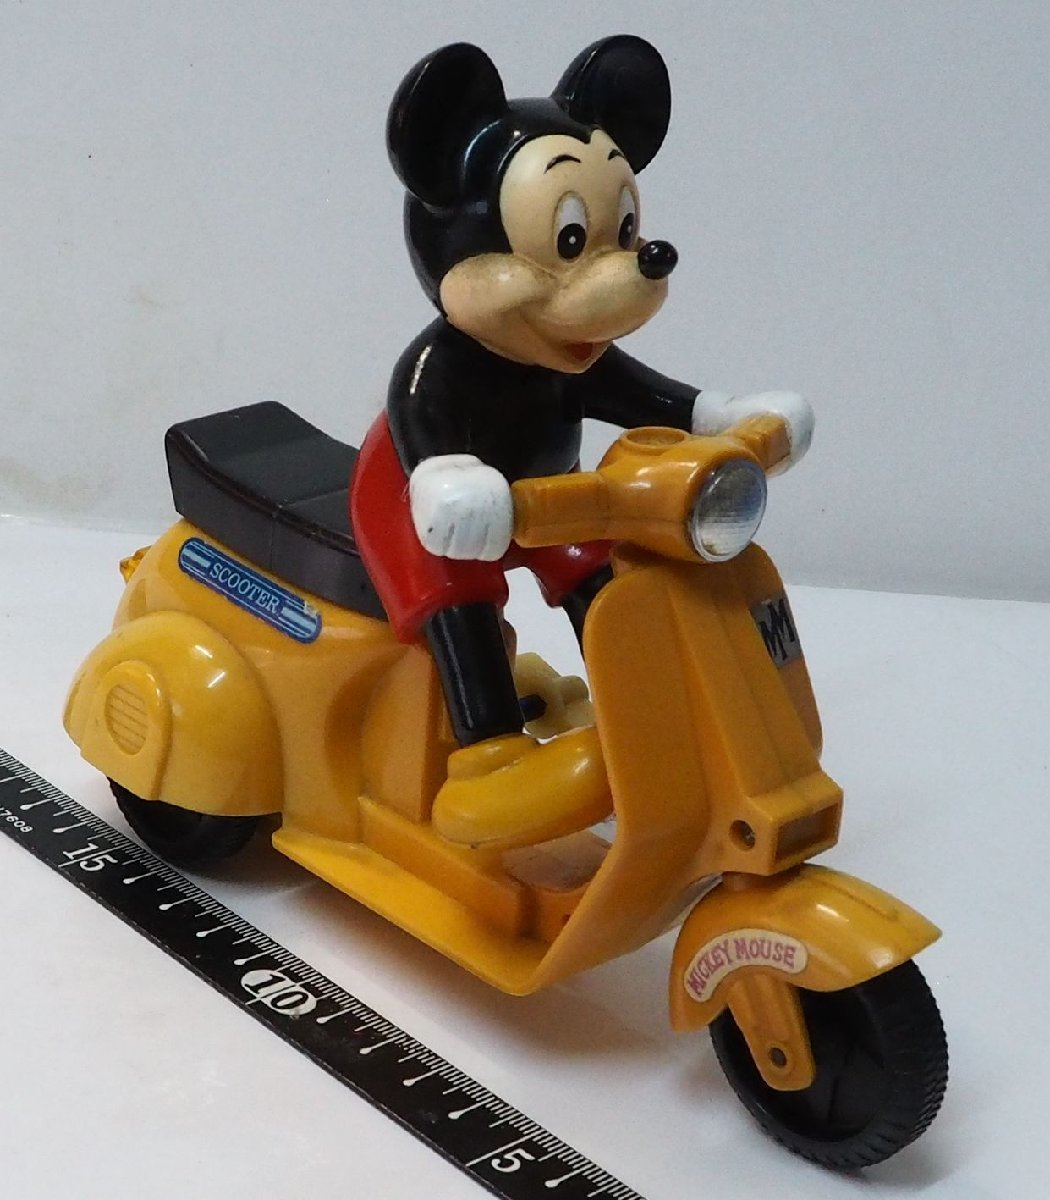  больше рисовое поле магазин [ Mickey * мышь zen мой скутер желтый цвет желтый мотоцикл 2 колесо машина рабочее состояние подтверждено ] сделано в Японии пластиковый миникар # Masudaya [ б/у ]0862